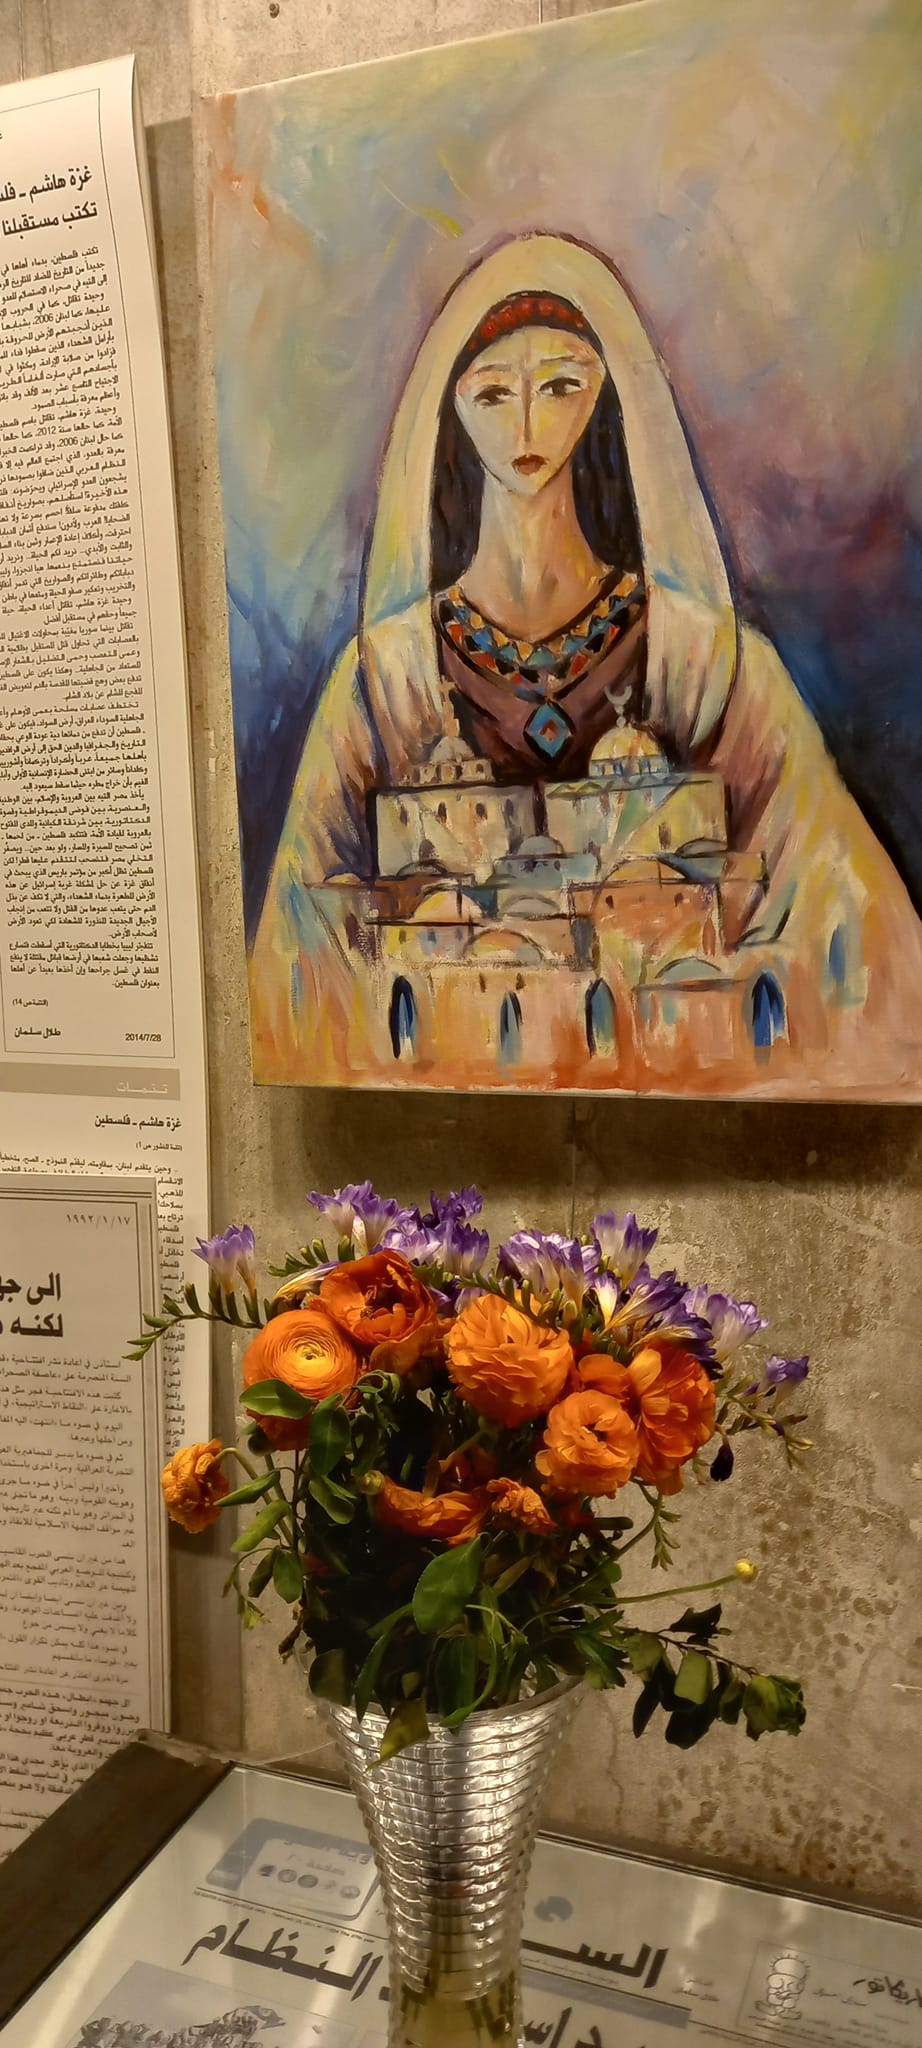 لوحة للتشكيلي الفلسطيني فايز الحسني في مهرجان وأنتم الأعلون